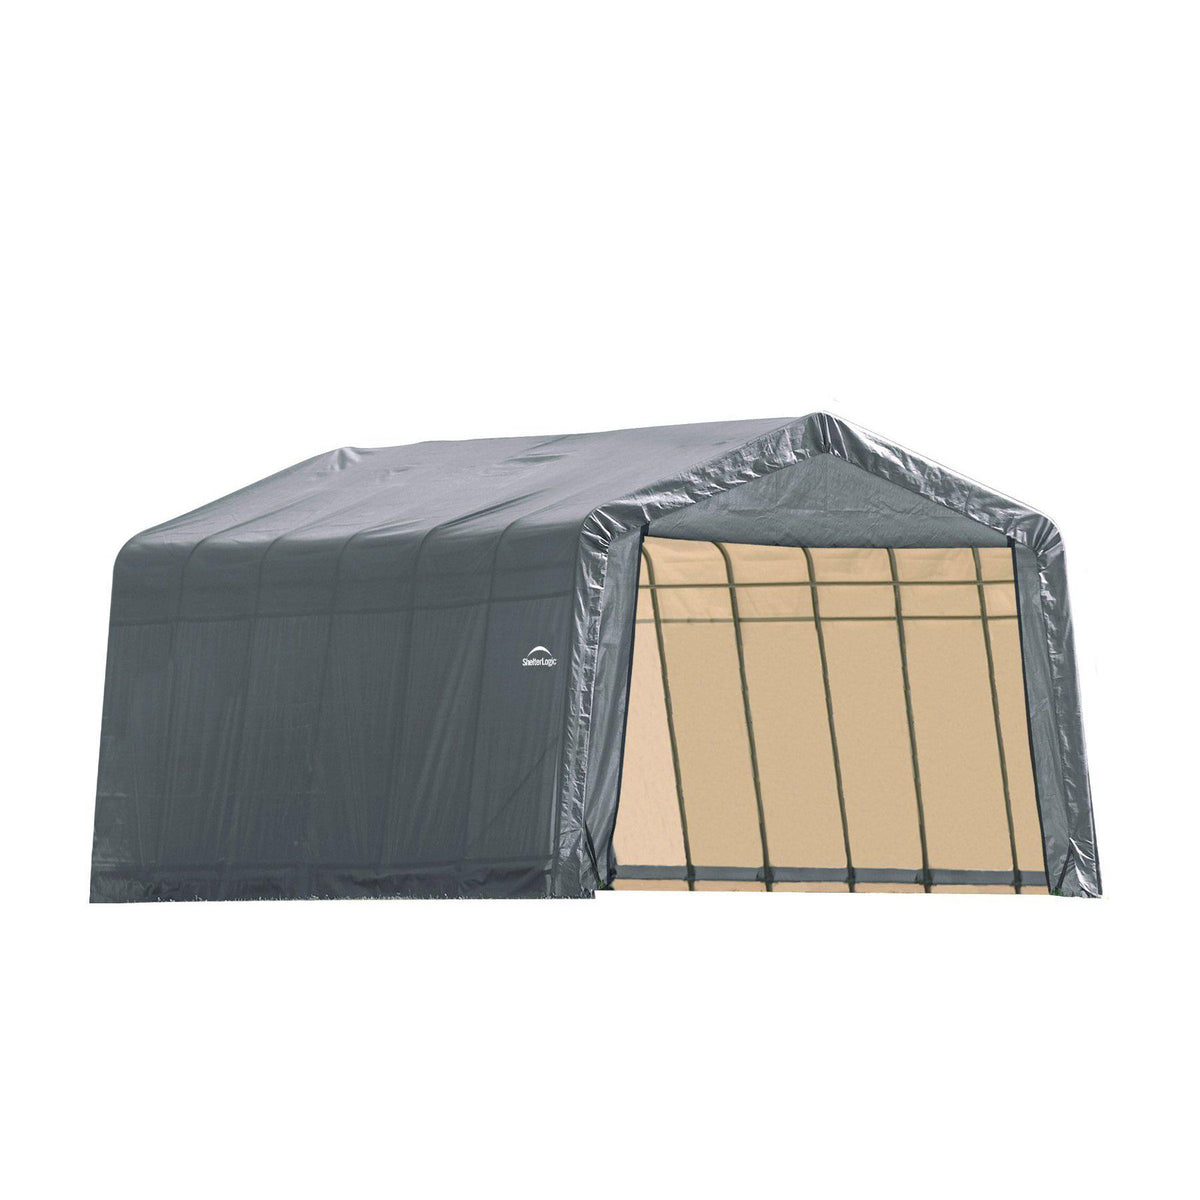 ShelterLogic 90243 Grey 12'x28'x10' Peak Style Shelter